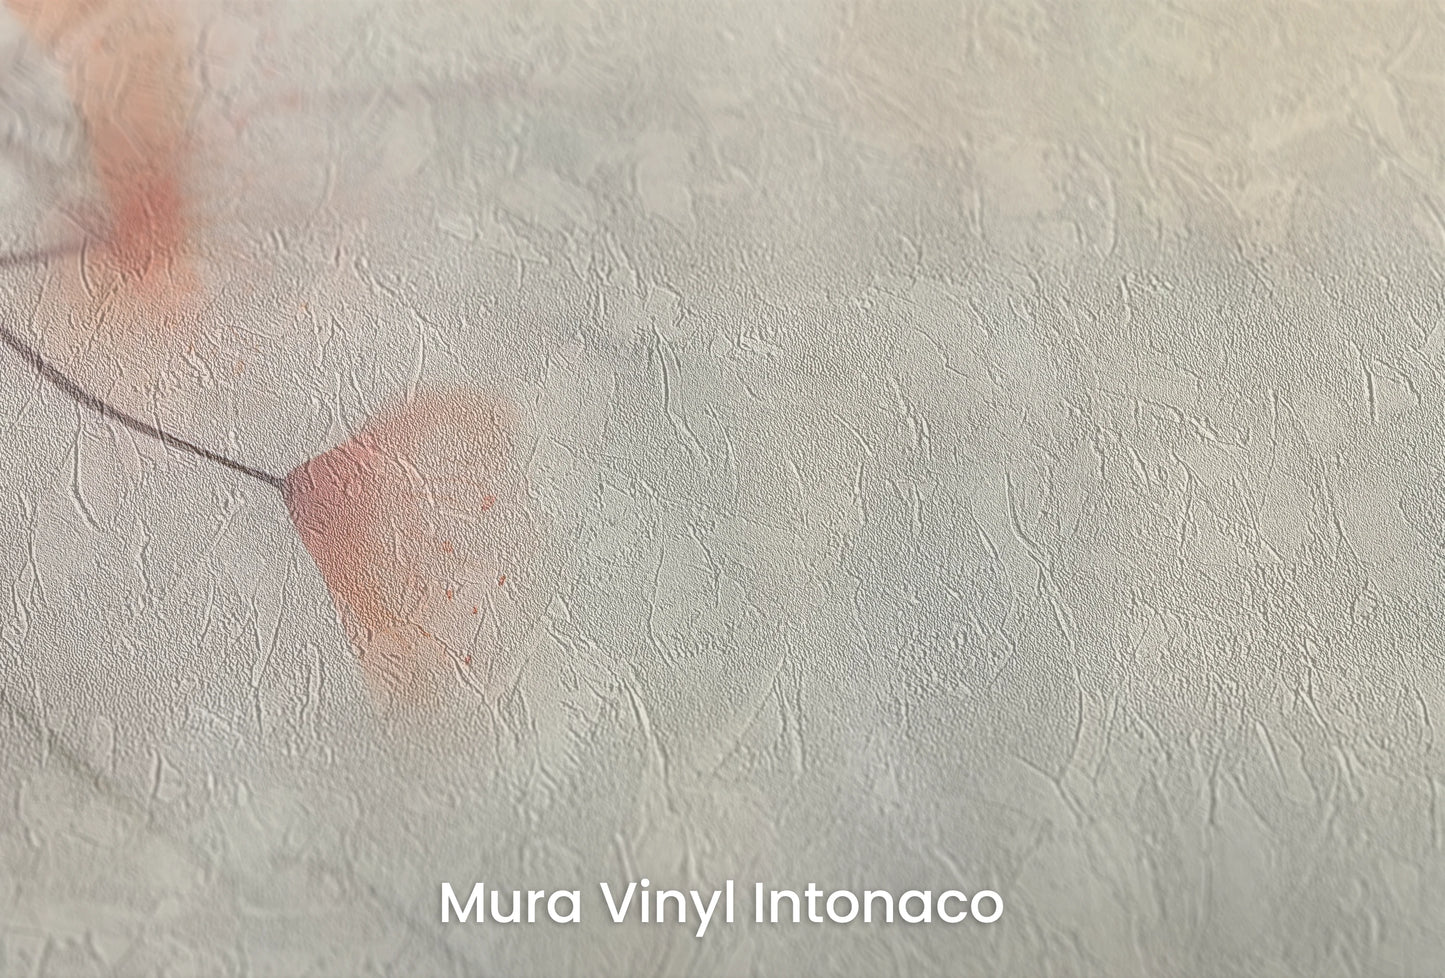 Zbliżenie na artystyczną fototapetę o nazwie Heron's Solitude na podłożu Mura Vinyl Intonaco - struktura tartego tynku.